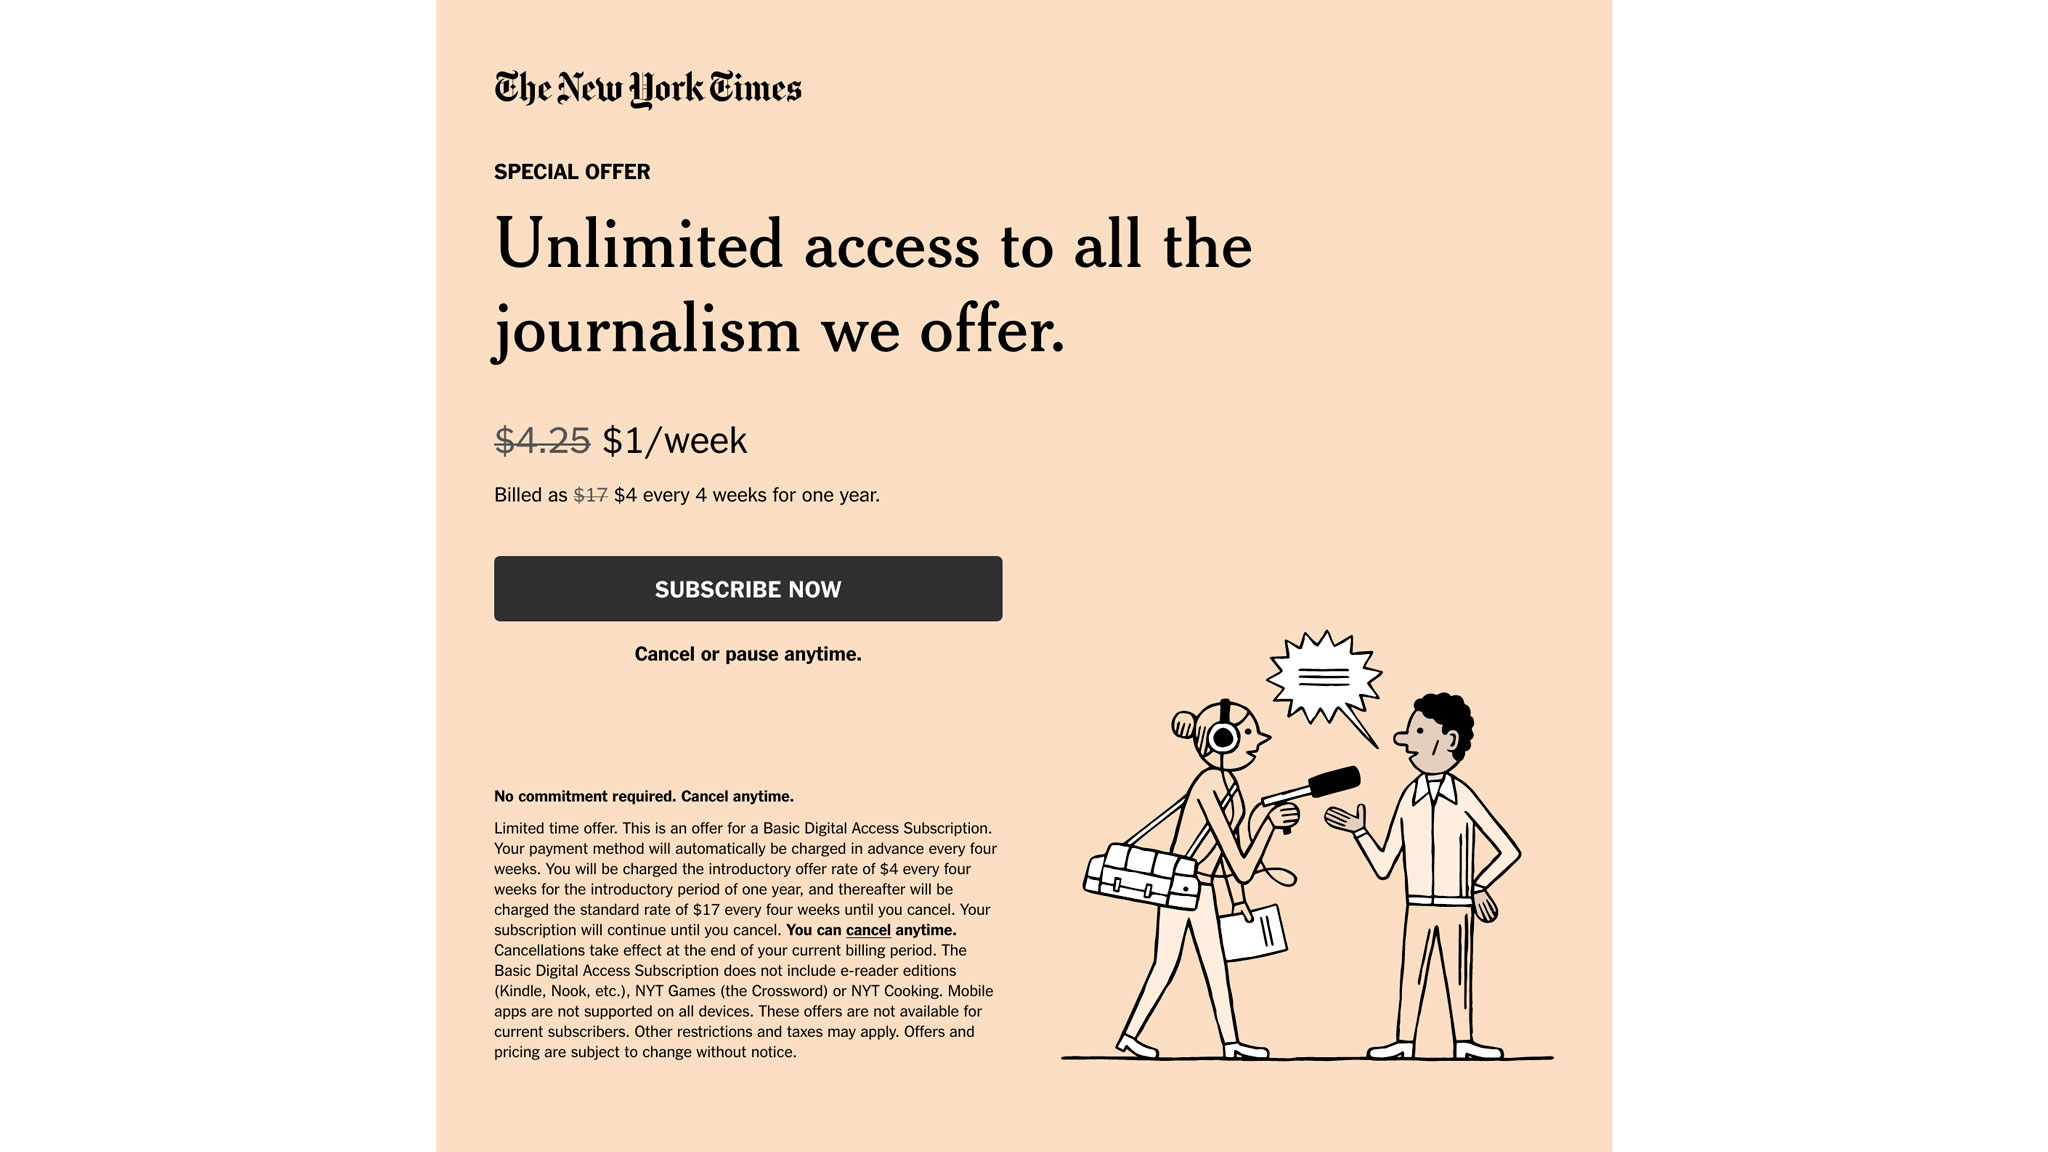 В The New York Times регулярно предлагают различные скидки на цифровую подписку. Последнее предложение: 50 центов вместо двух долларов в неделю в течение одного года